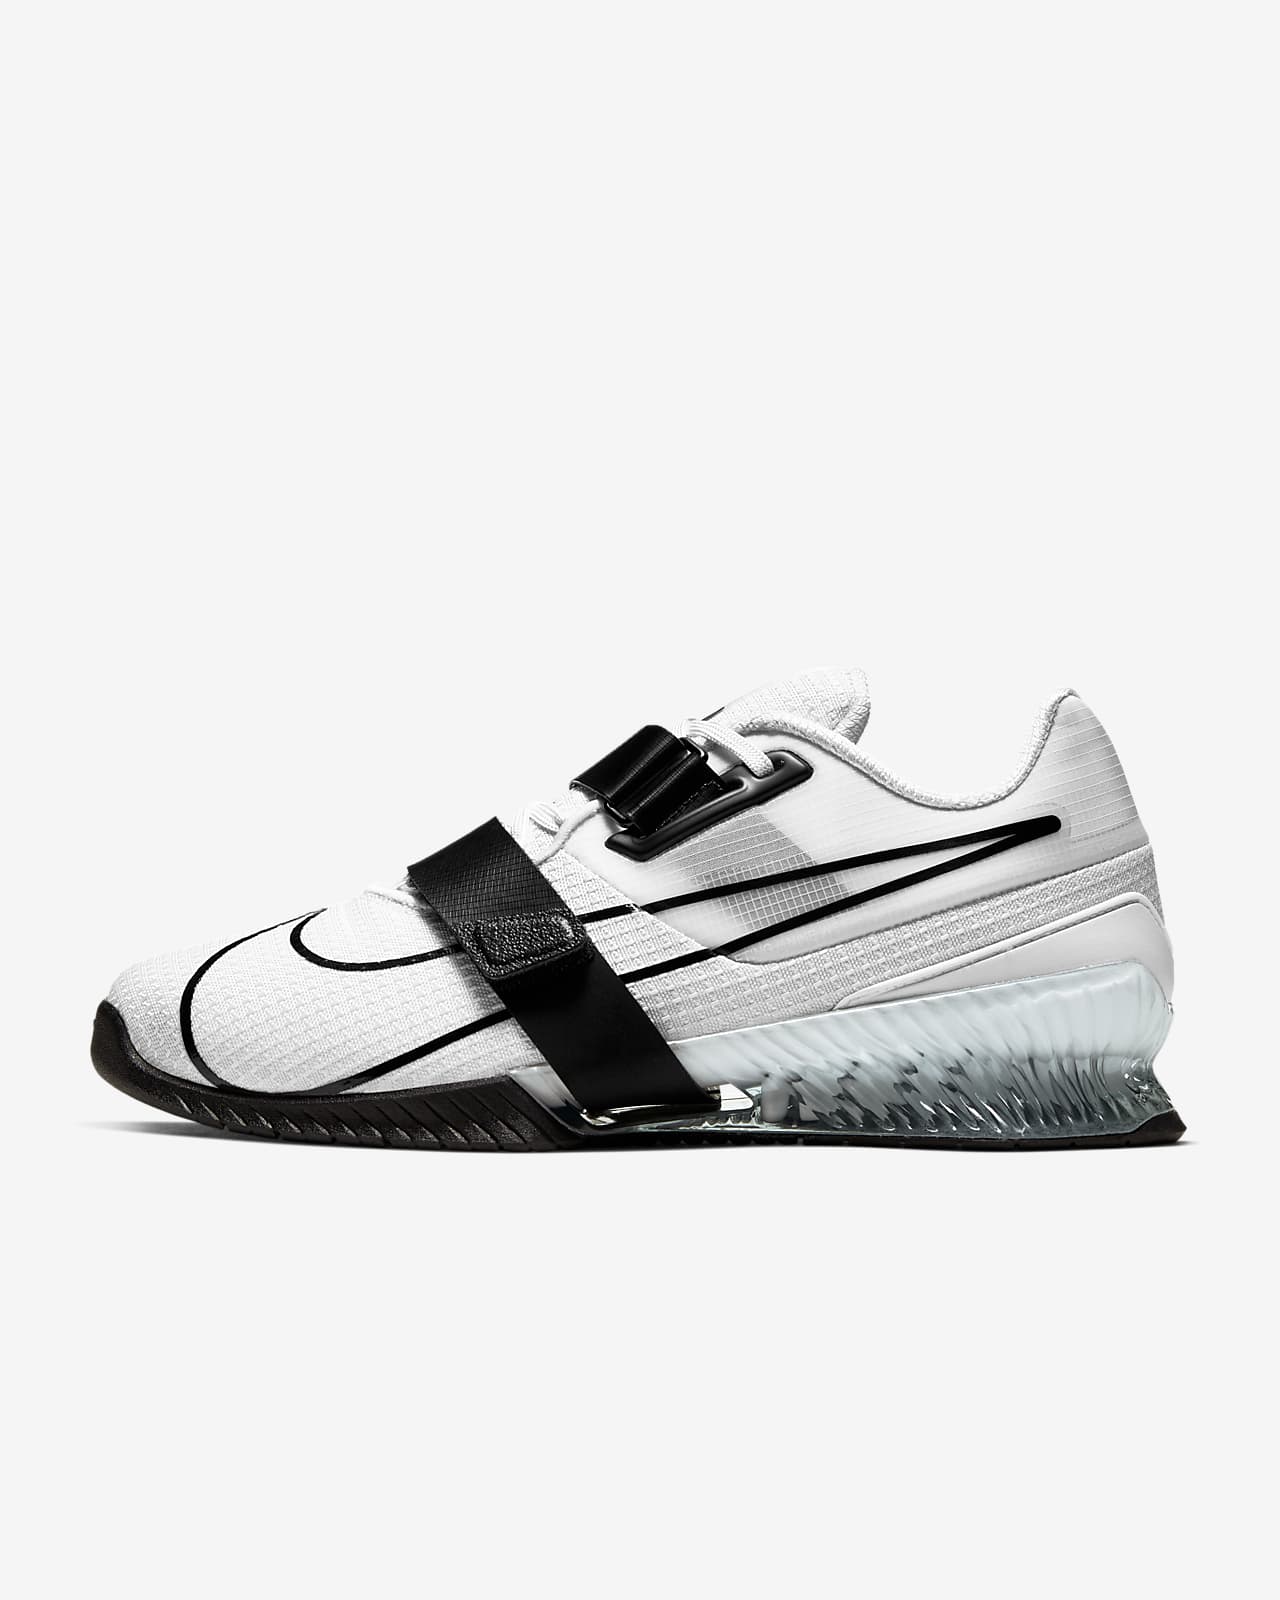 Παπούτσια άρσης βαρών Nike Romaleos 4